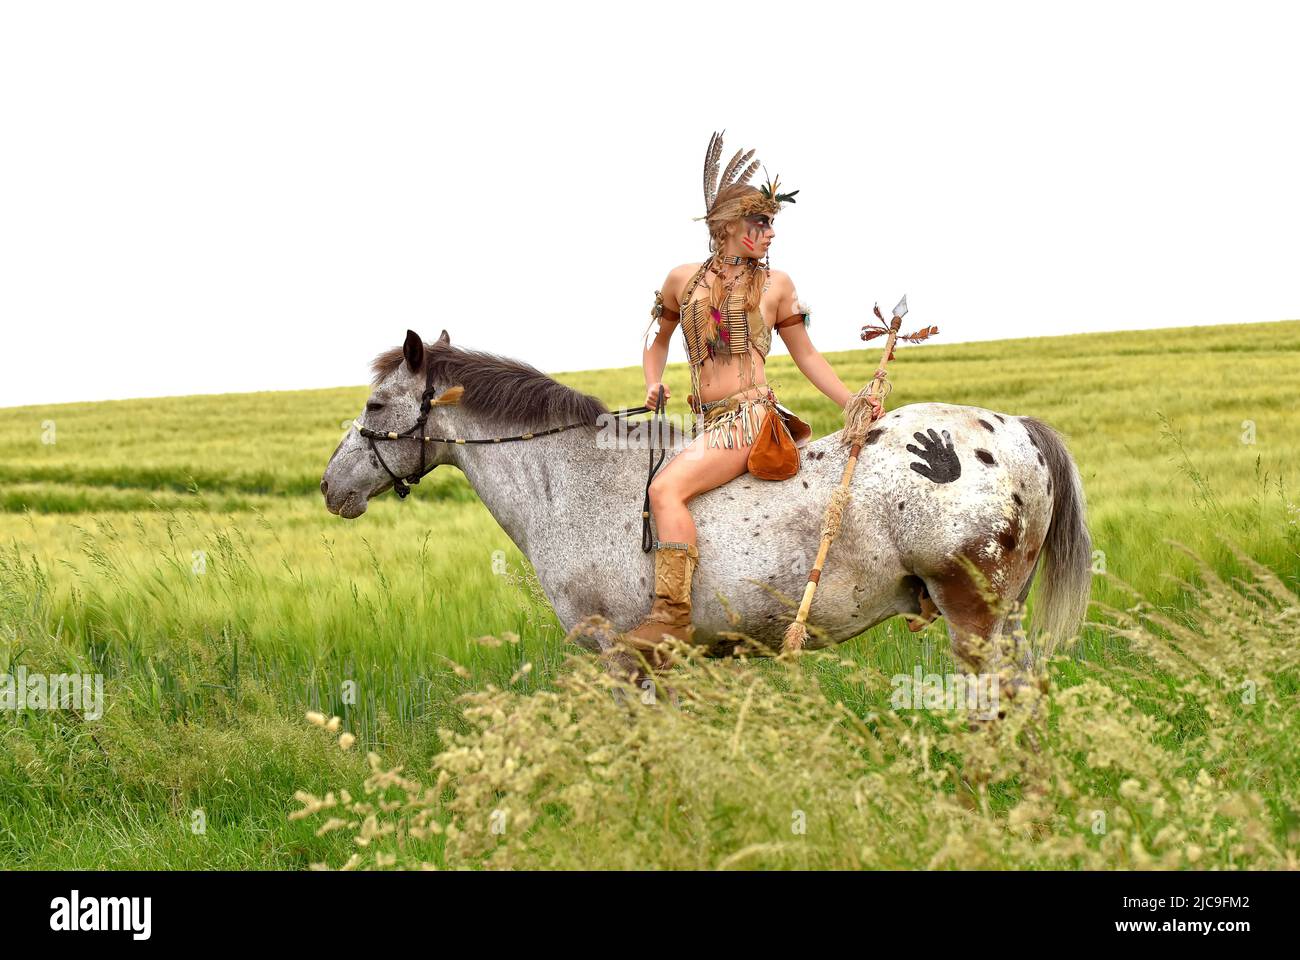 Ein junges indisches Mädchen wird im Prarie auf ihrem Pony reiten gesehen. Sie ist als Indianerin der Ureinwohner Amerikas verkleidet und hält einen Speer in der Hand. Stockfoto